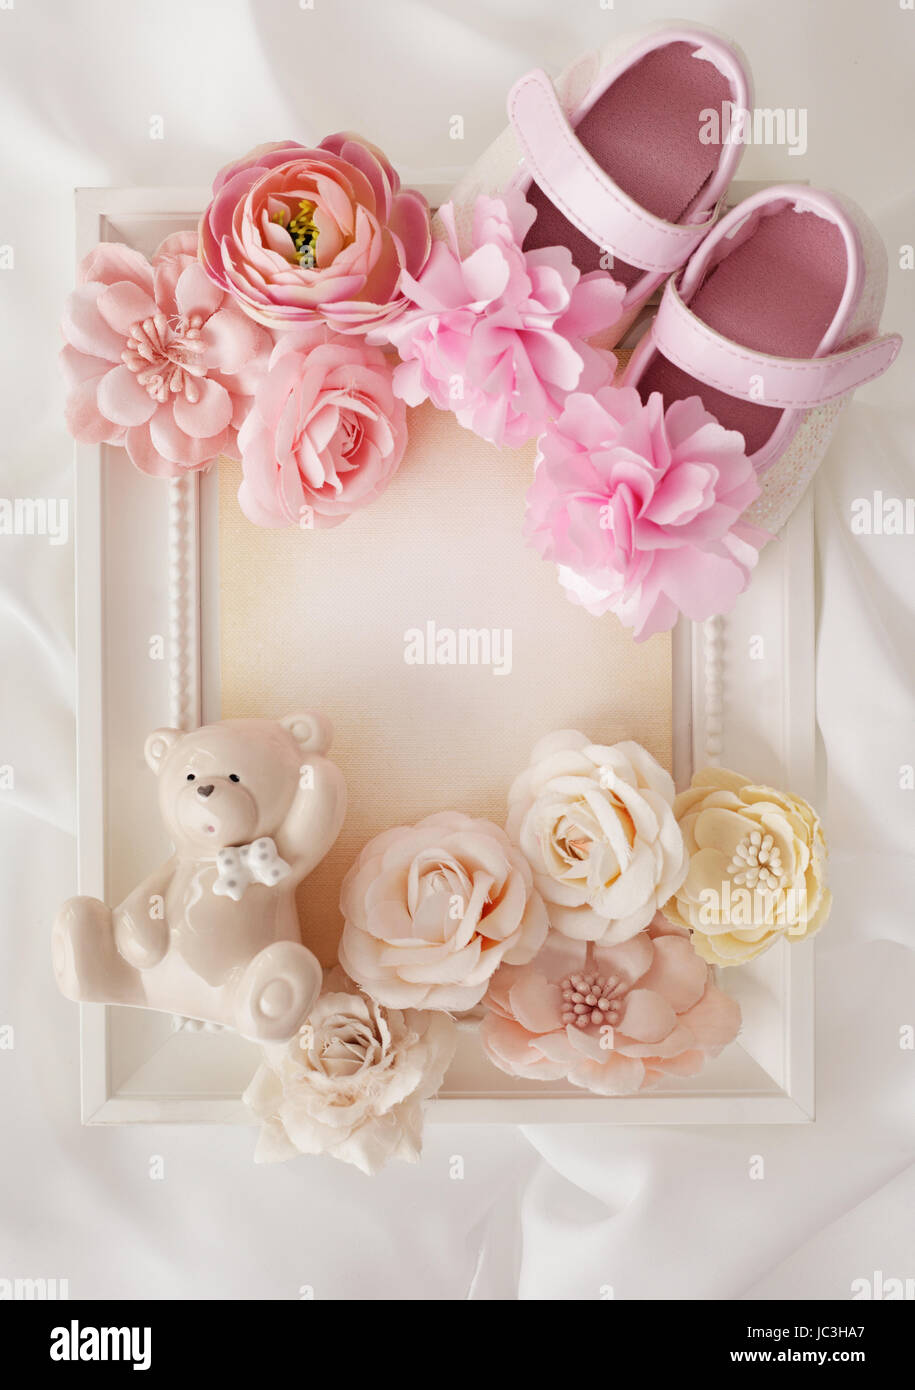 gros plan du cadre photo, des chaussures pour bébé et des fleurs Banque D'Images